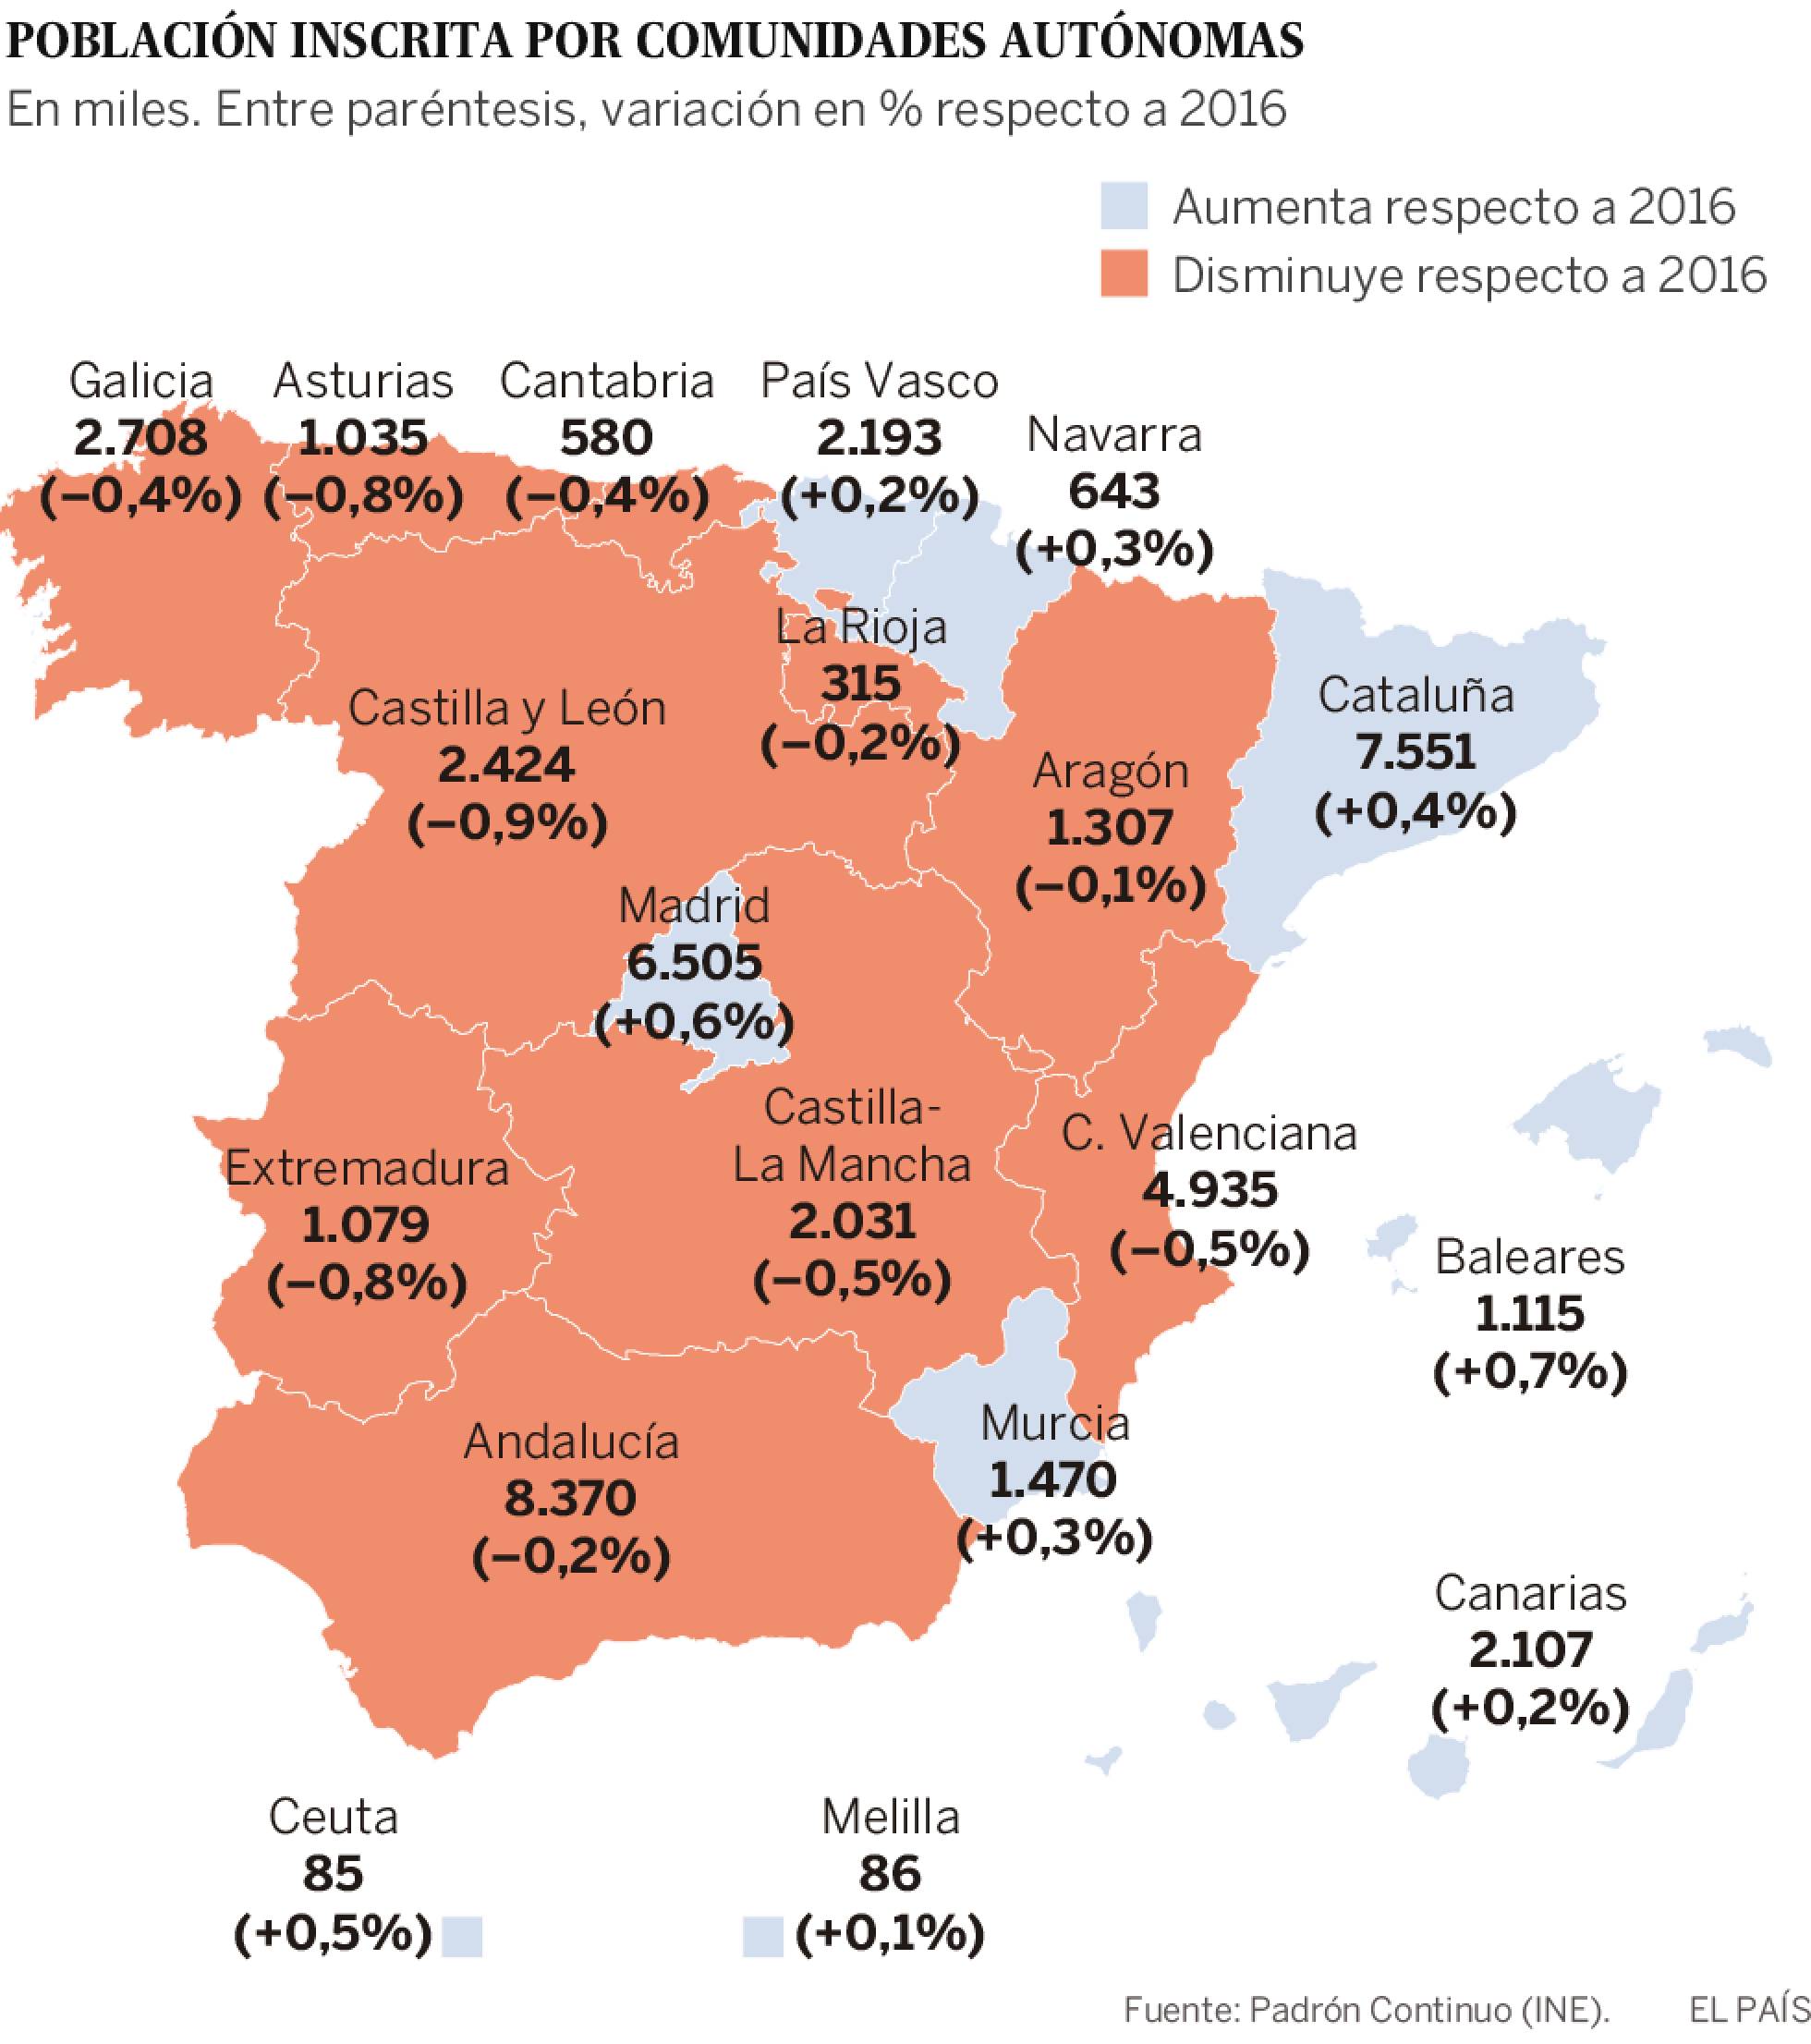 Demografía: Migraciones, emigrantes, inmigrantes en España. - Página 2 1493193374_514621_1493215692_sumario_normal_recorte1